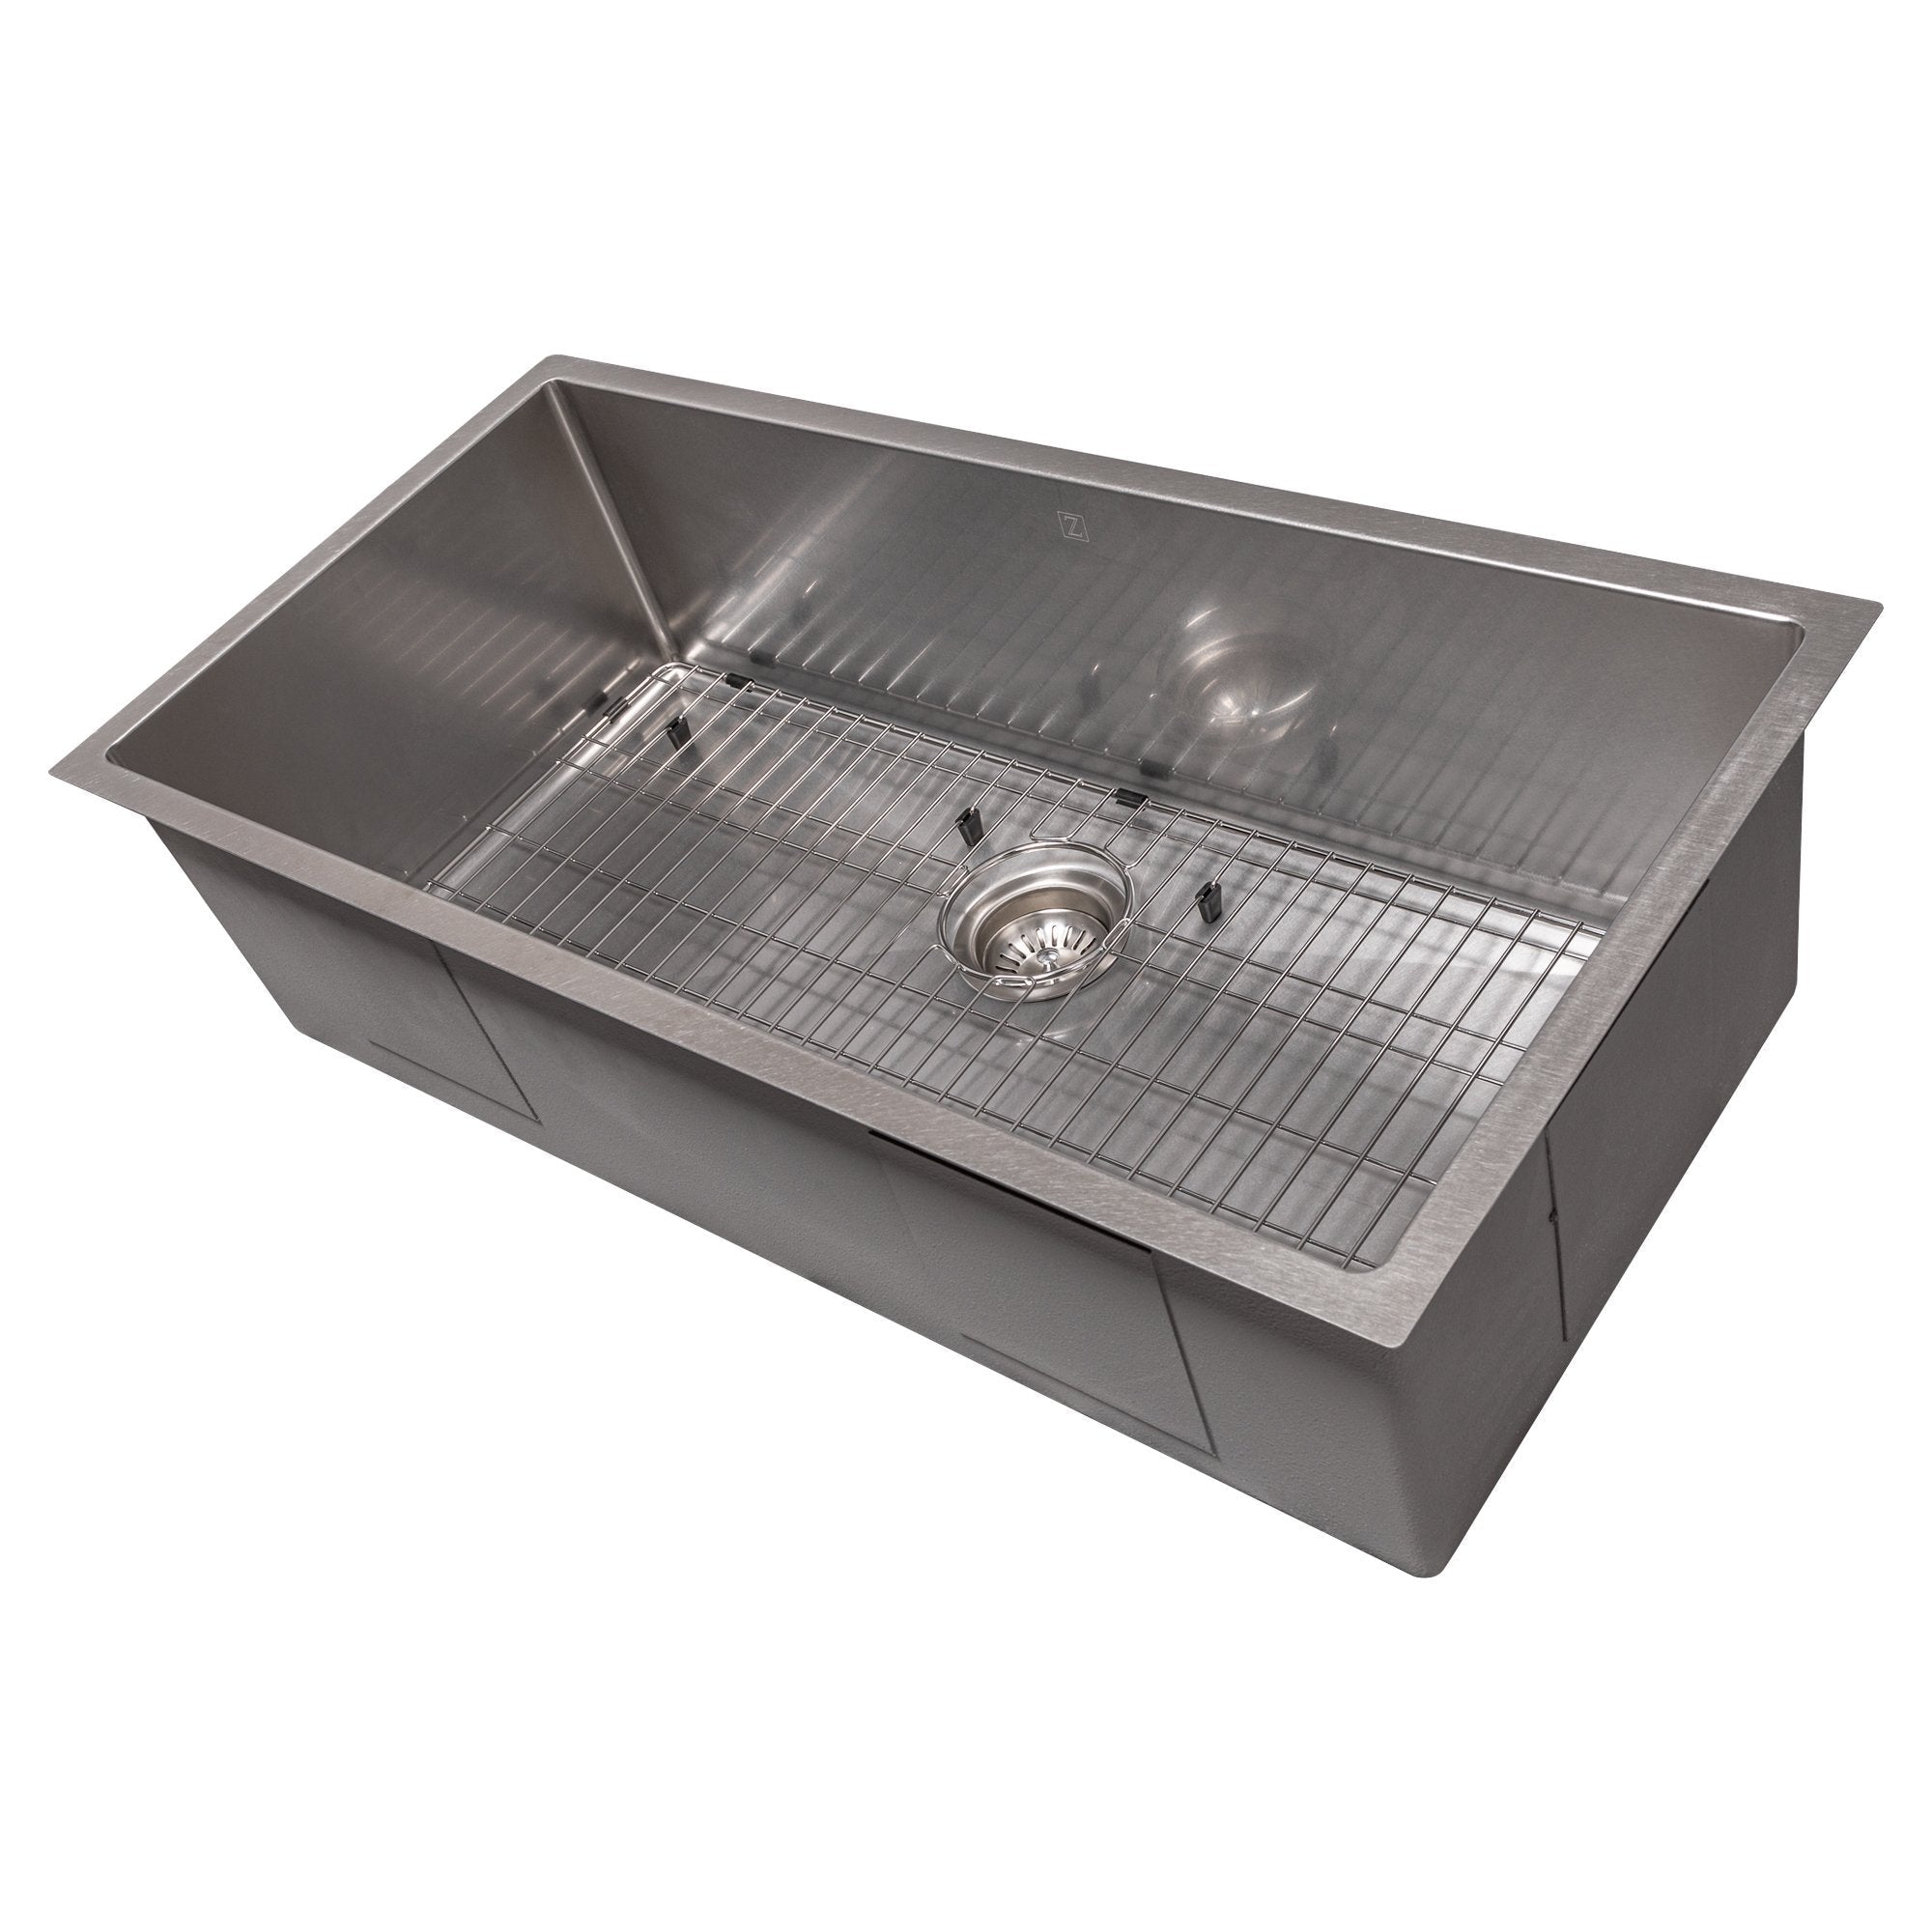 ZLINE 36 in. Meribel Undermount Single Bowl Stainless Steel Kitchen Sink with Bottom Grid, SRS-36